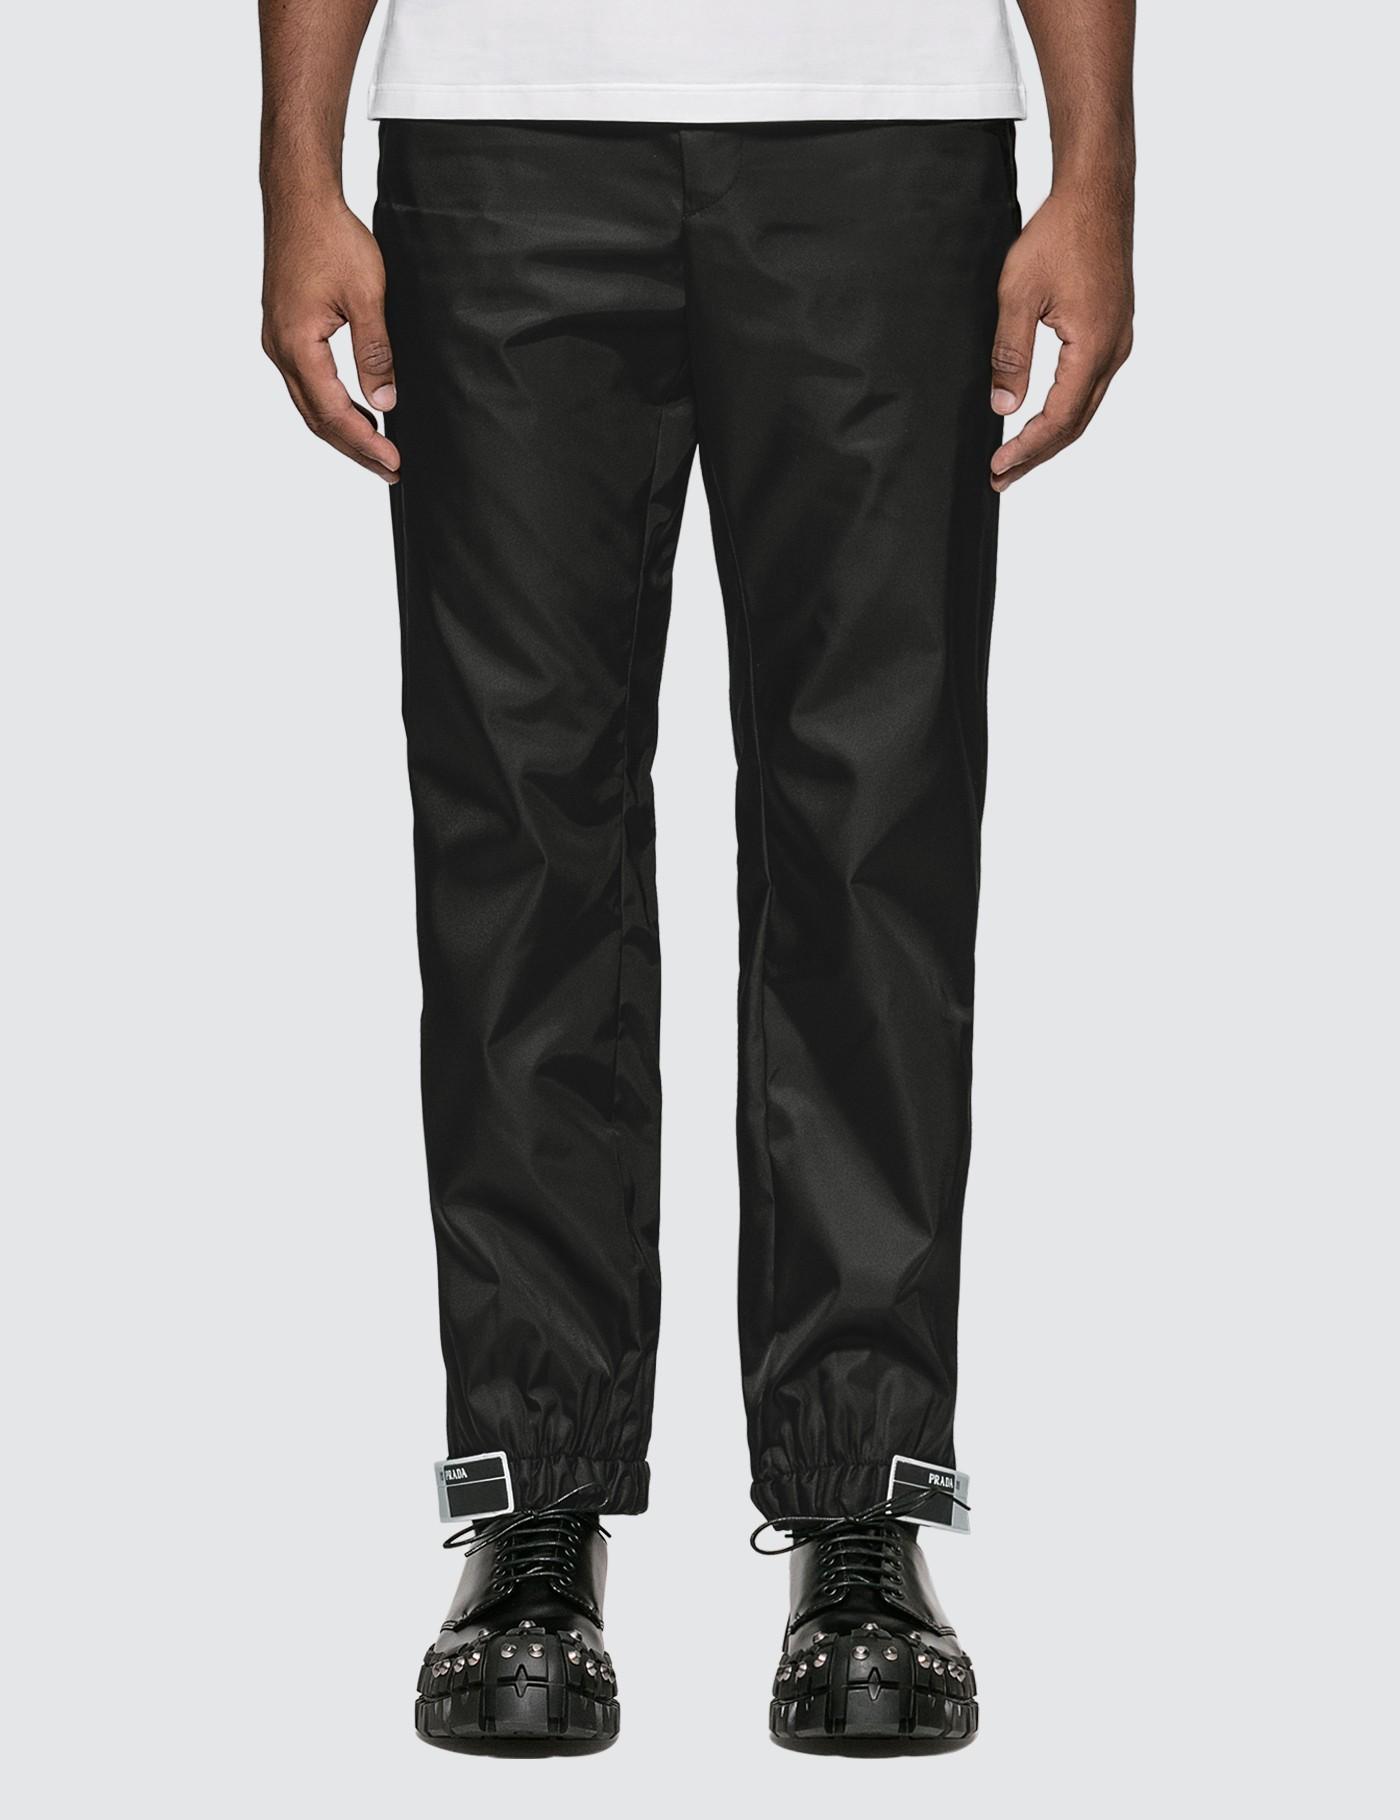 Prada Synthetic Gabardine Nylon Track Pants in Black for Men - Lyst